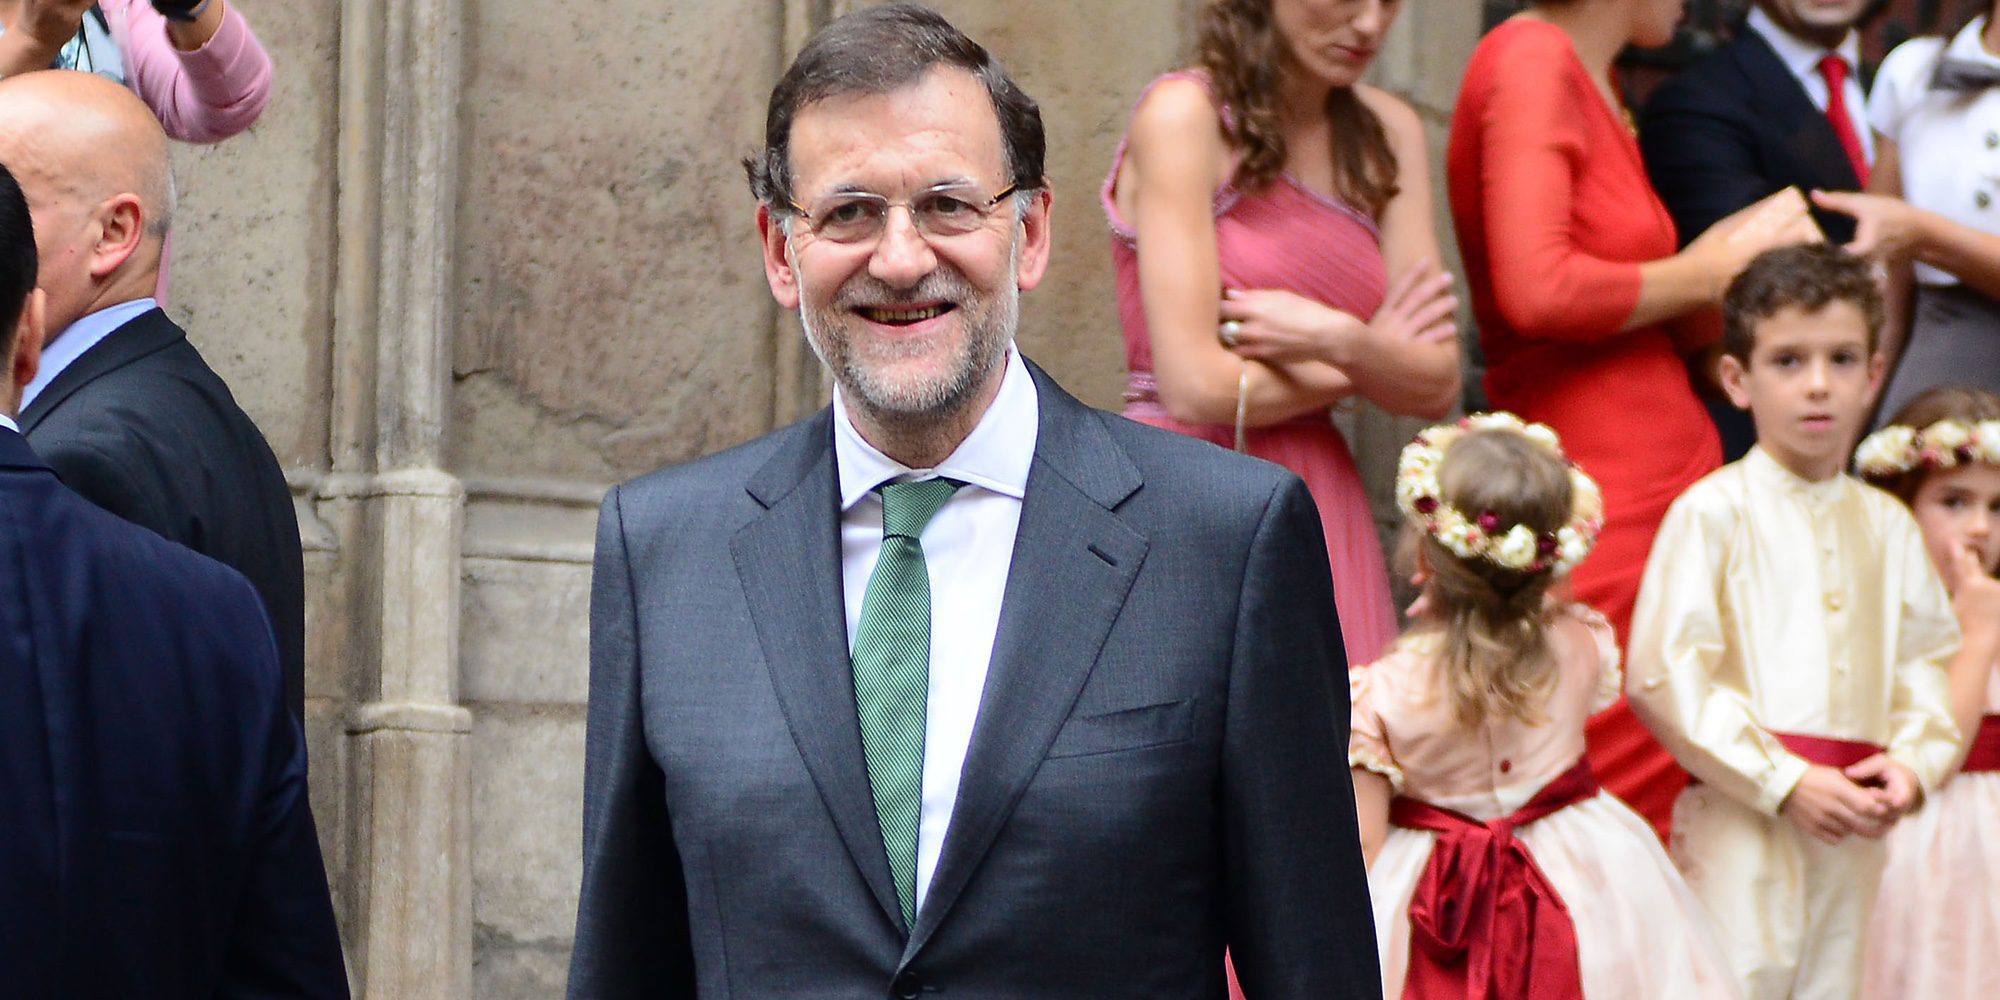 Mariano Rajoy lo da todo bailando al son de 'Mi gran noche' de Raphael en una boda